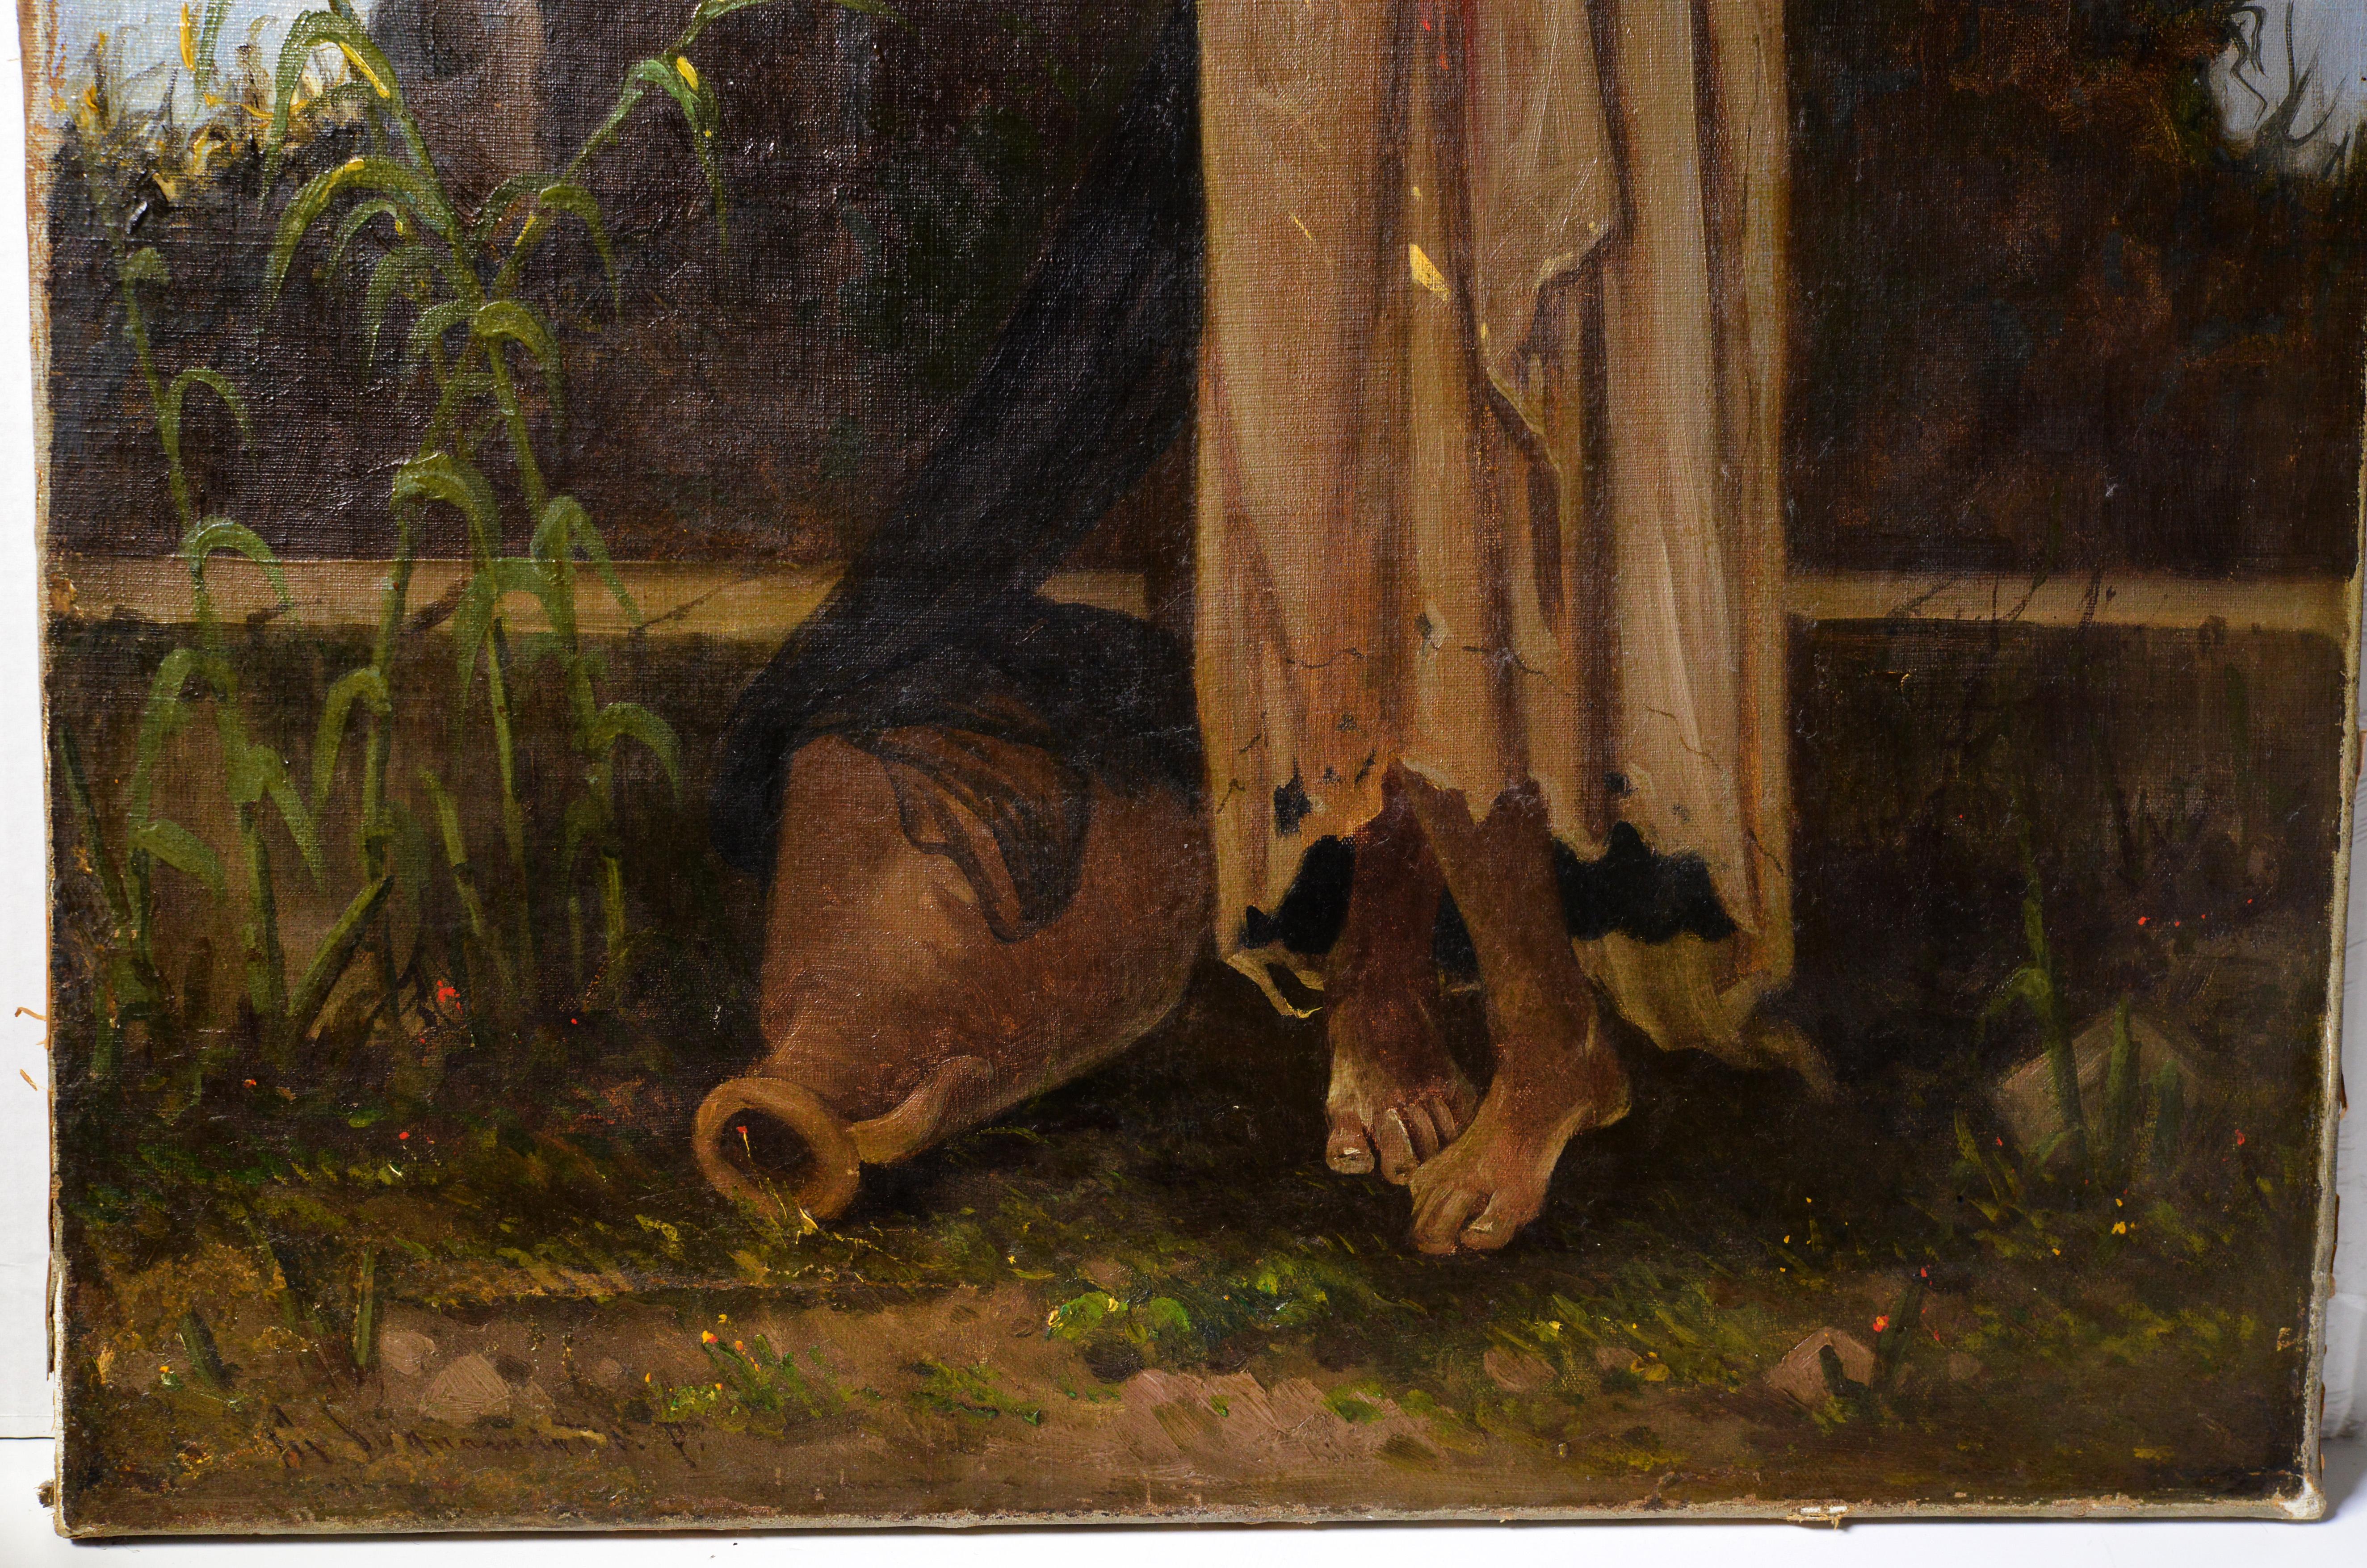 Beduinenmädchen posiert für den Maler im späten Sonnenlicht (Sonnenuntergang). Gemalt von Cavaliero Antonio Scognamiglio um 1870-1880, wahrscheinlich in Kairo, da ein ähnliches, kleineres Werk vom Künstler so bezeichnet wurde. Seine Gemälde